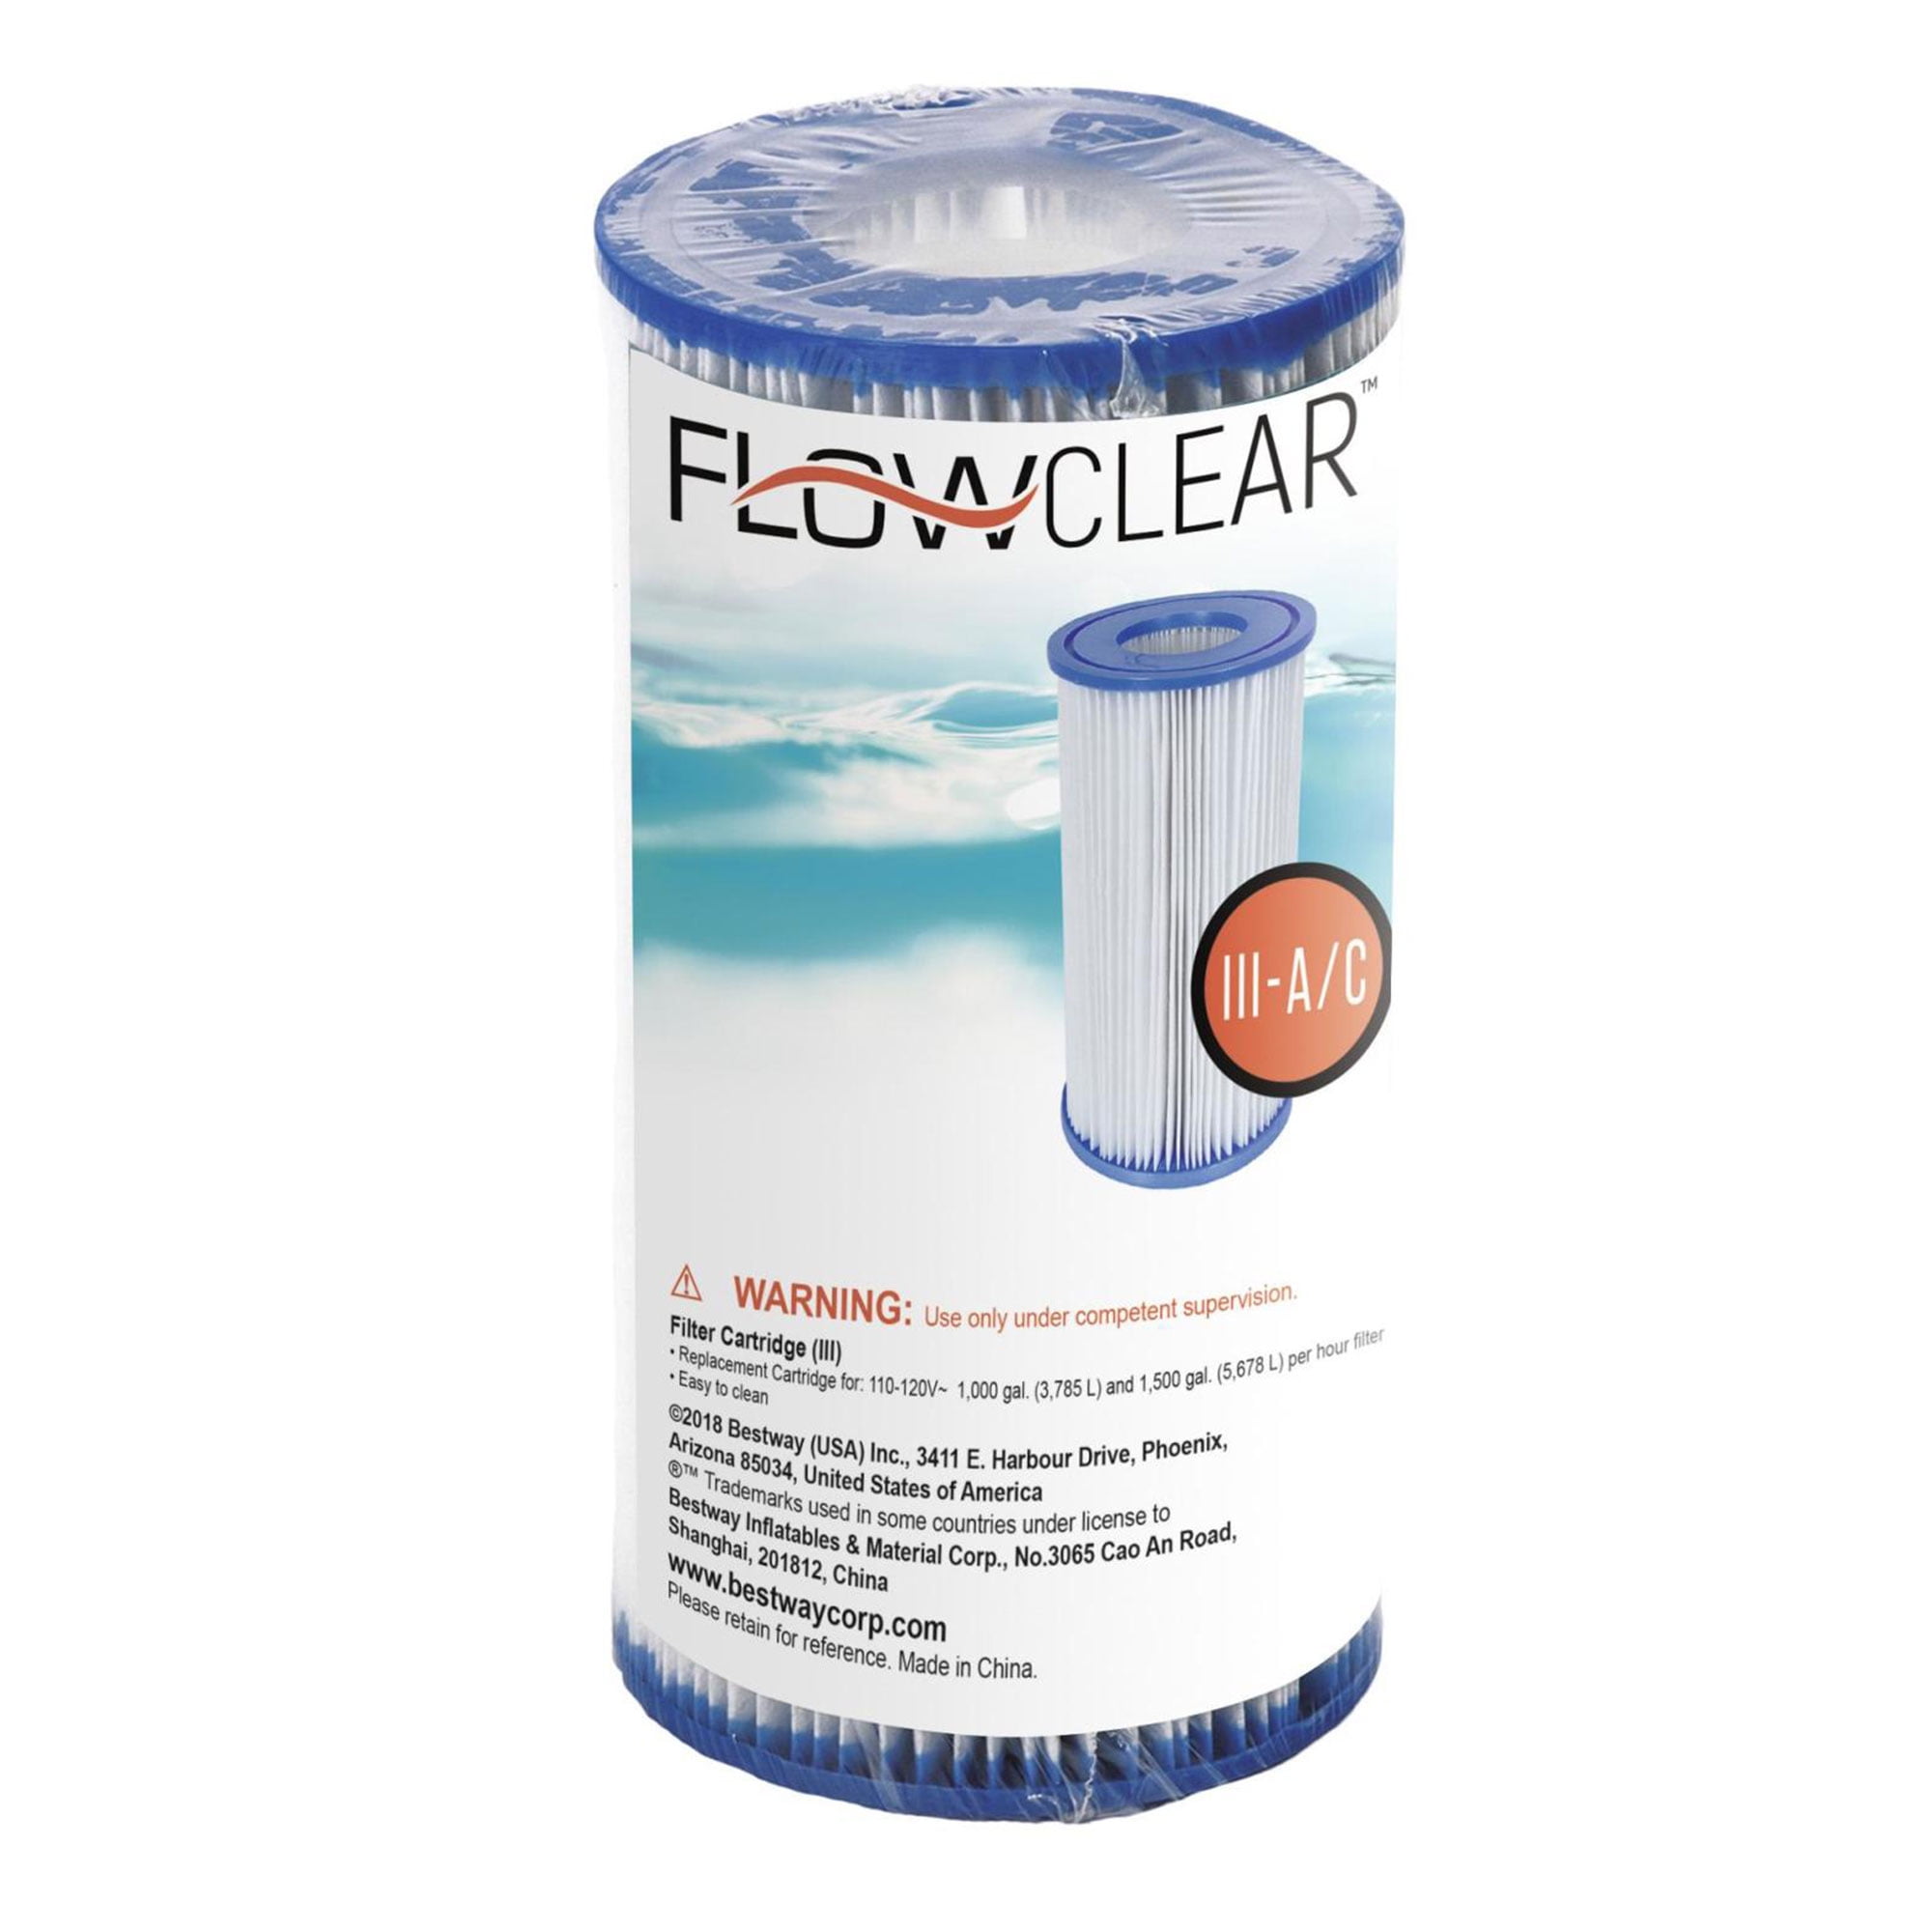 Картридж фильтра Flowclear ™ # 58012. Flowclear картридж для фильтра Тип 1. Flowclear картридж для фильтра 58093. Flowclear фильтр.